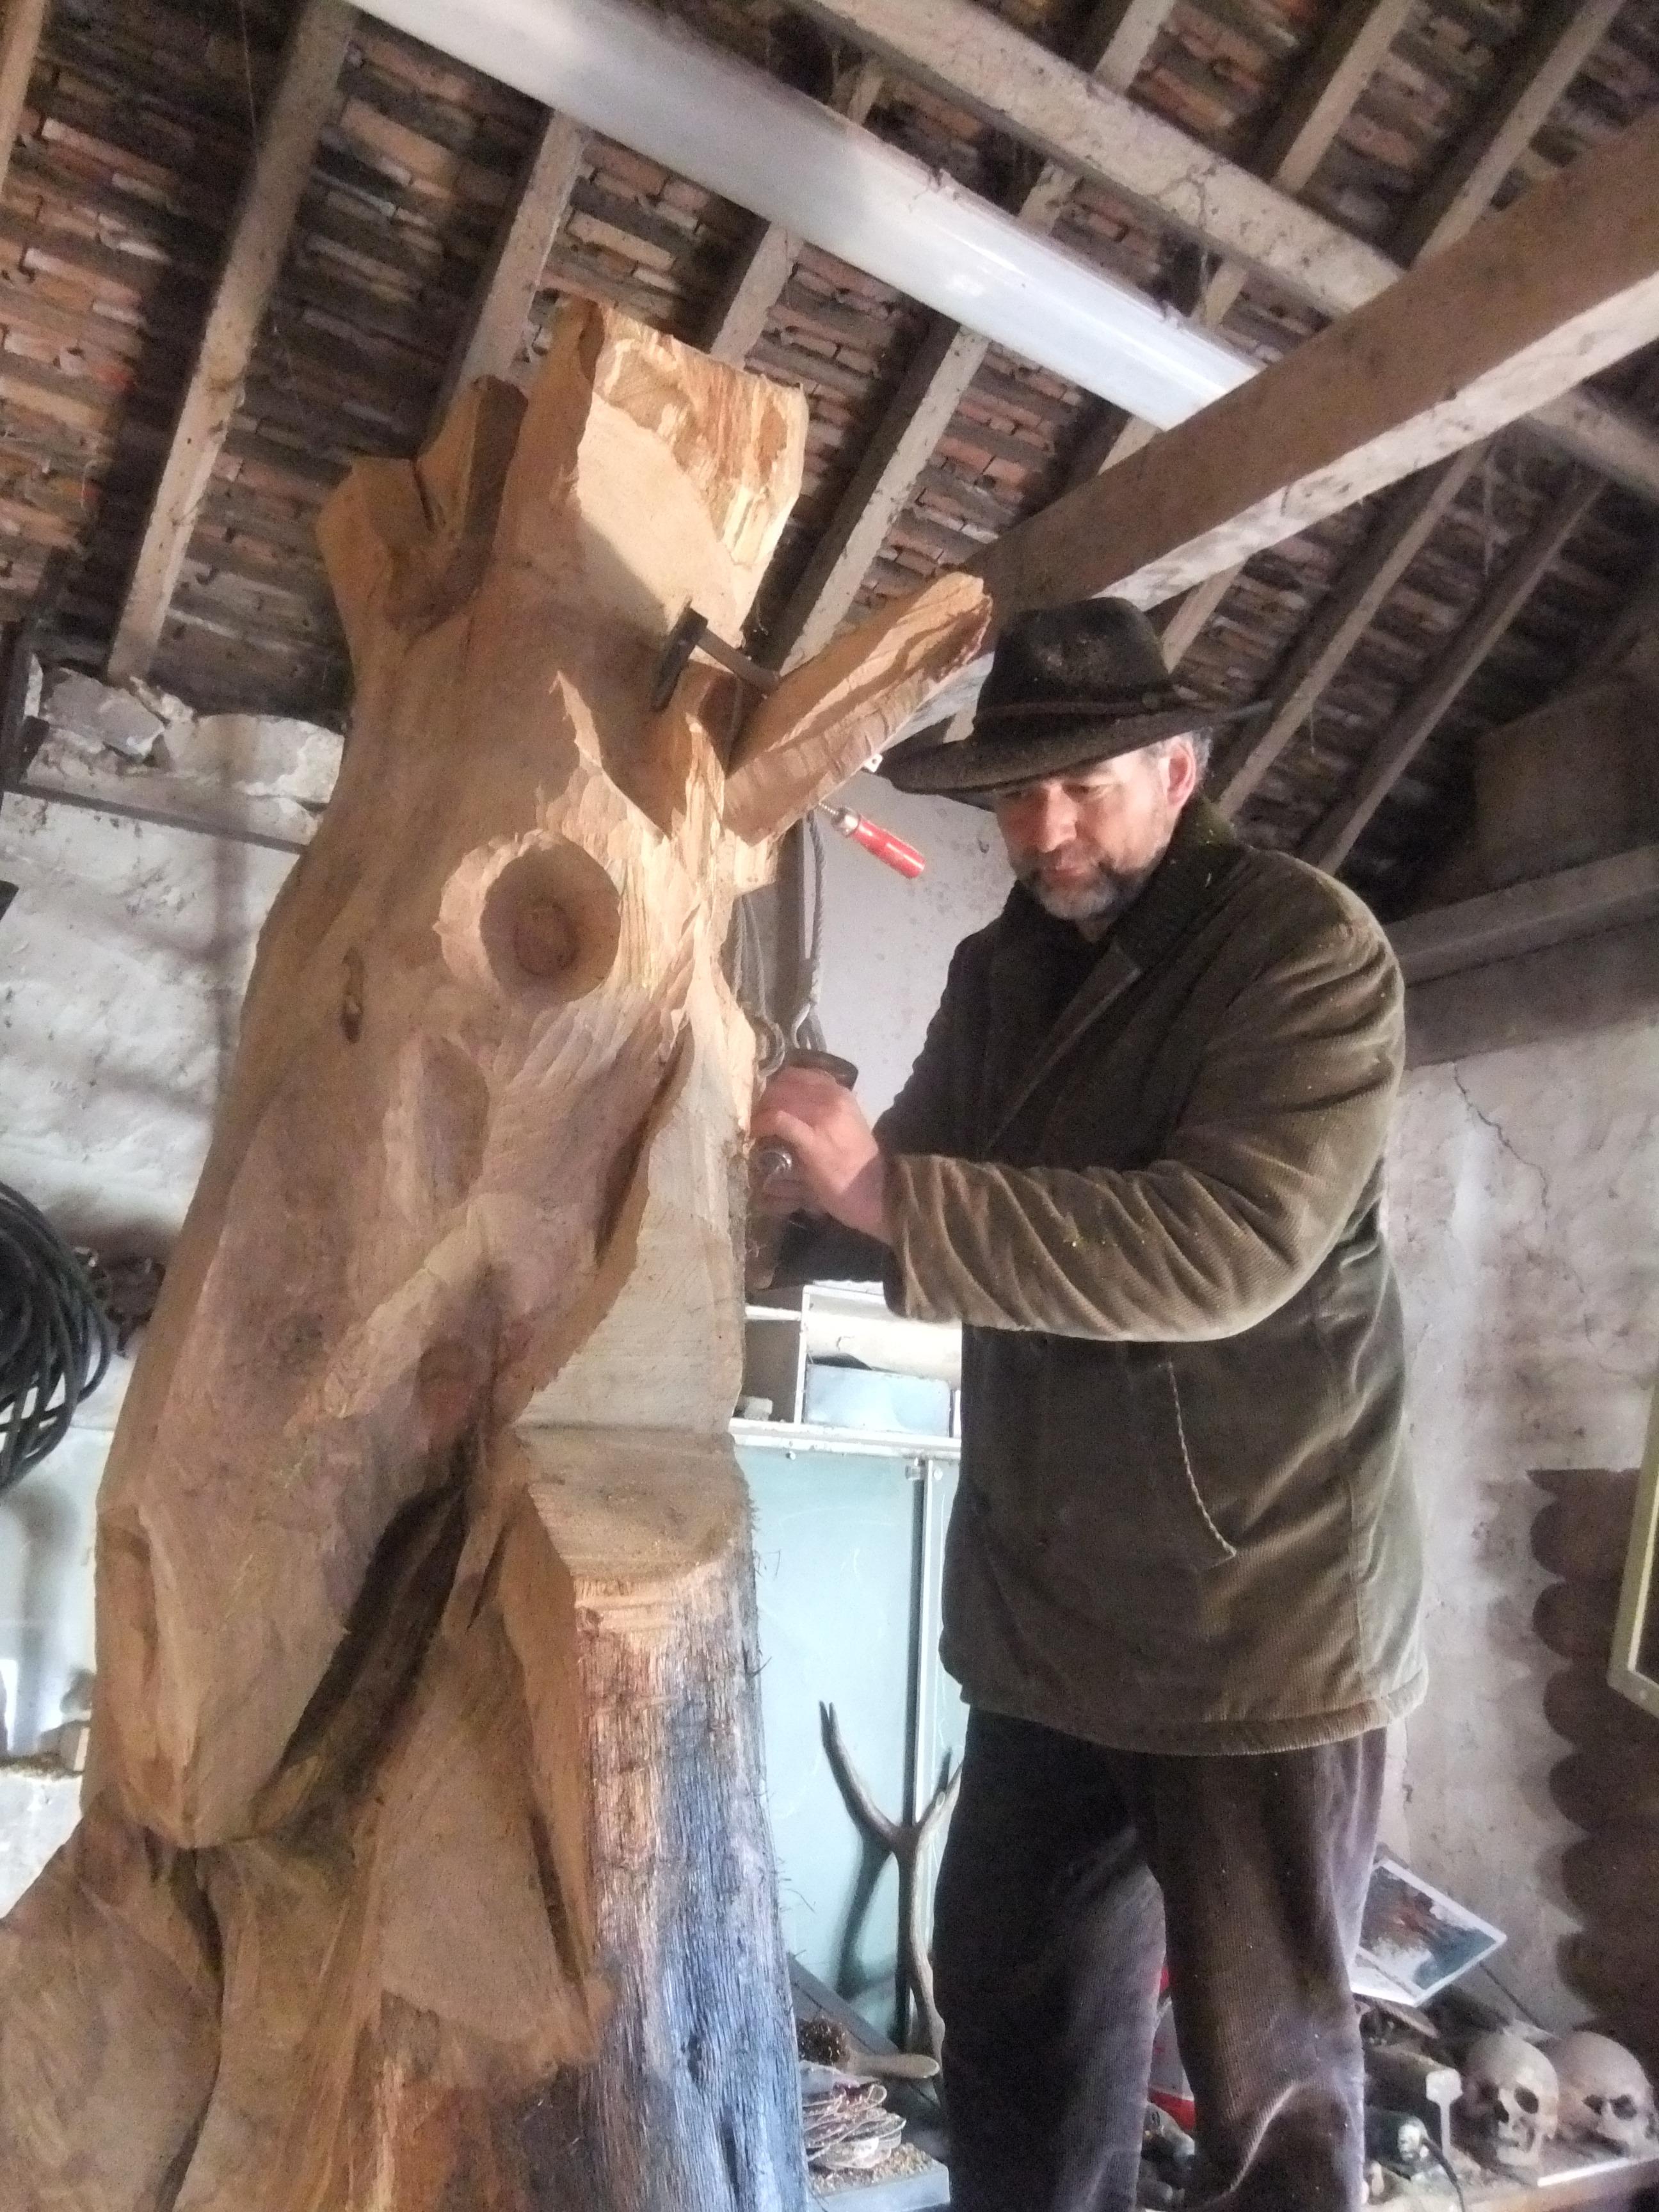 Biennale de Sologne on Twitter: "Jacques Rieu pour la Maison du Cerf  travaille sur l'Esprit de la forêt dans son atelier http://t.co/qZ6AoaVTjk"  / Twitter